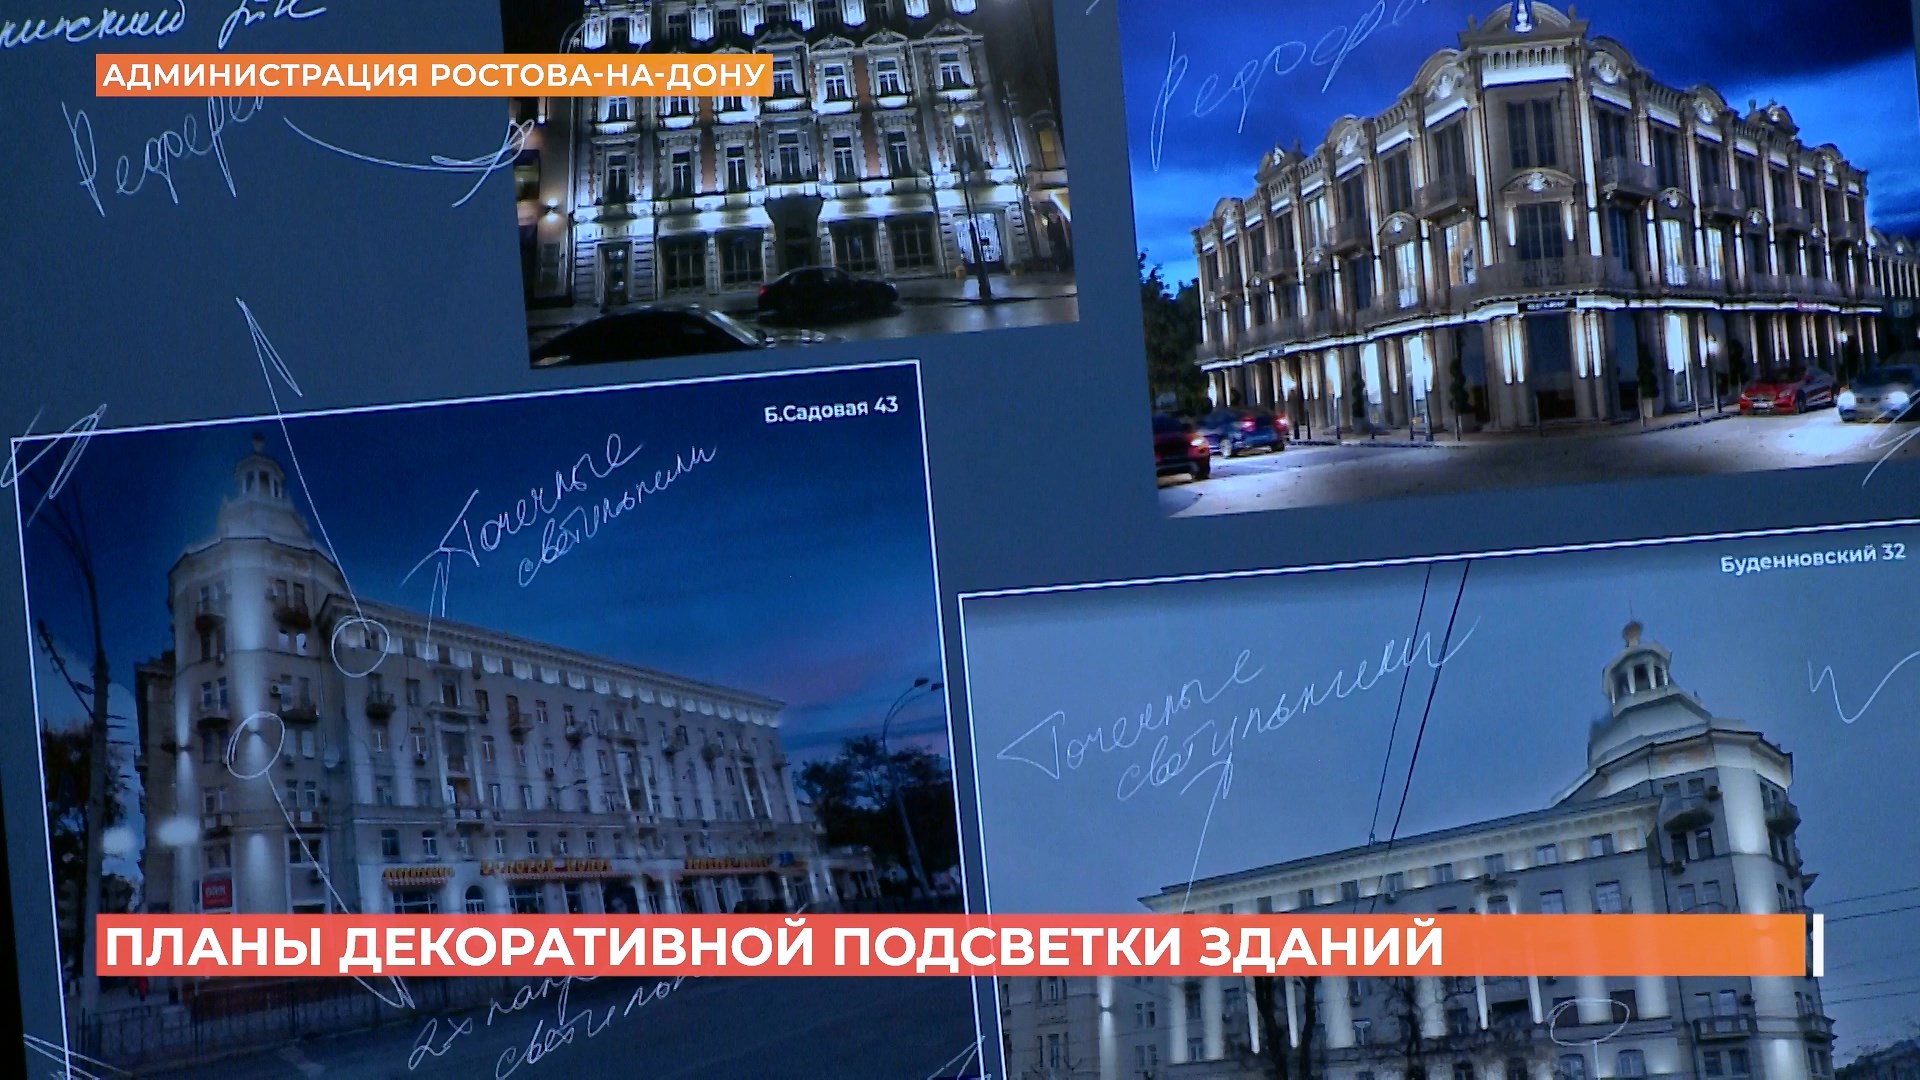 Декоративное освещение Ростова обсудили в городской администрации